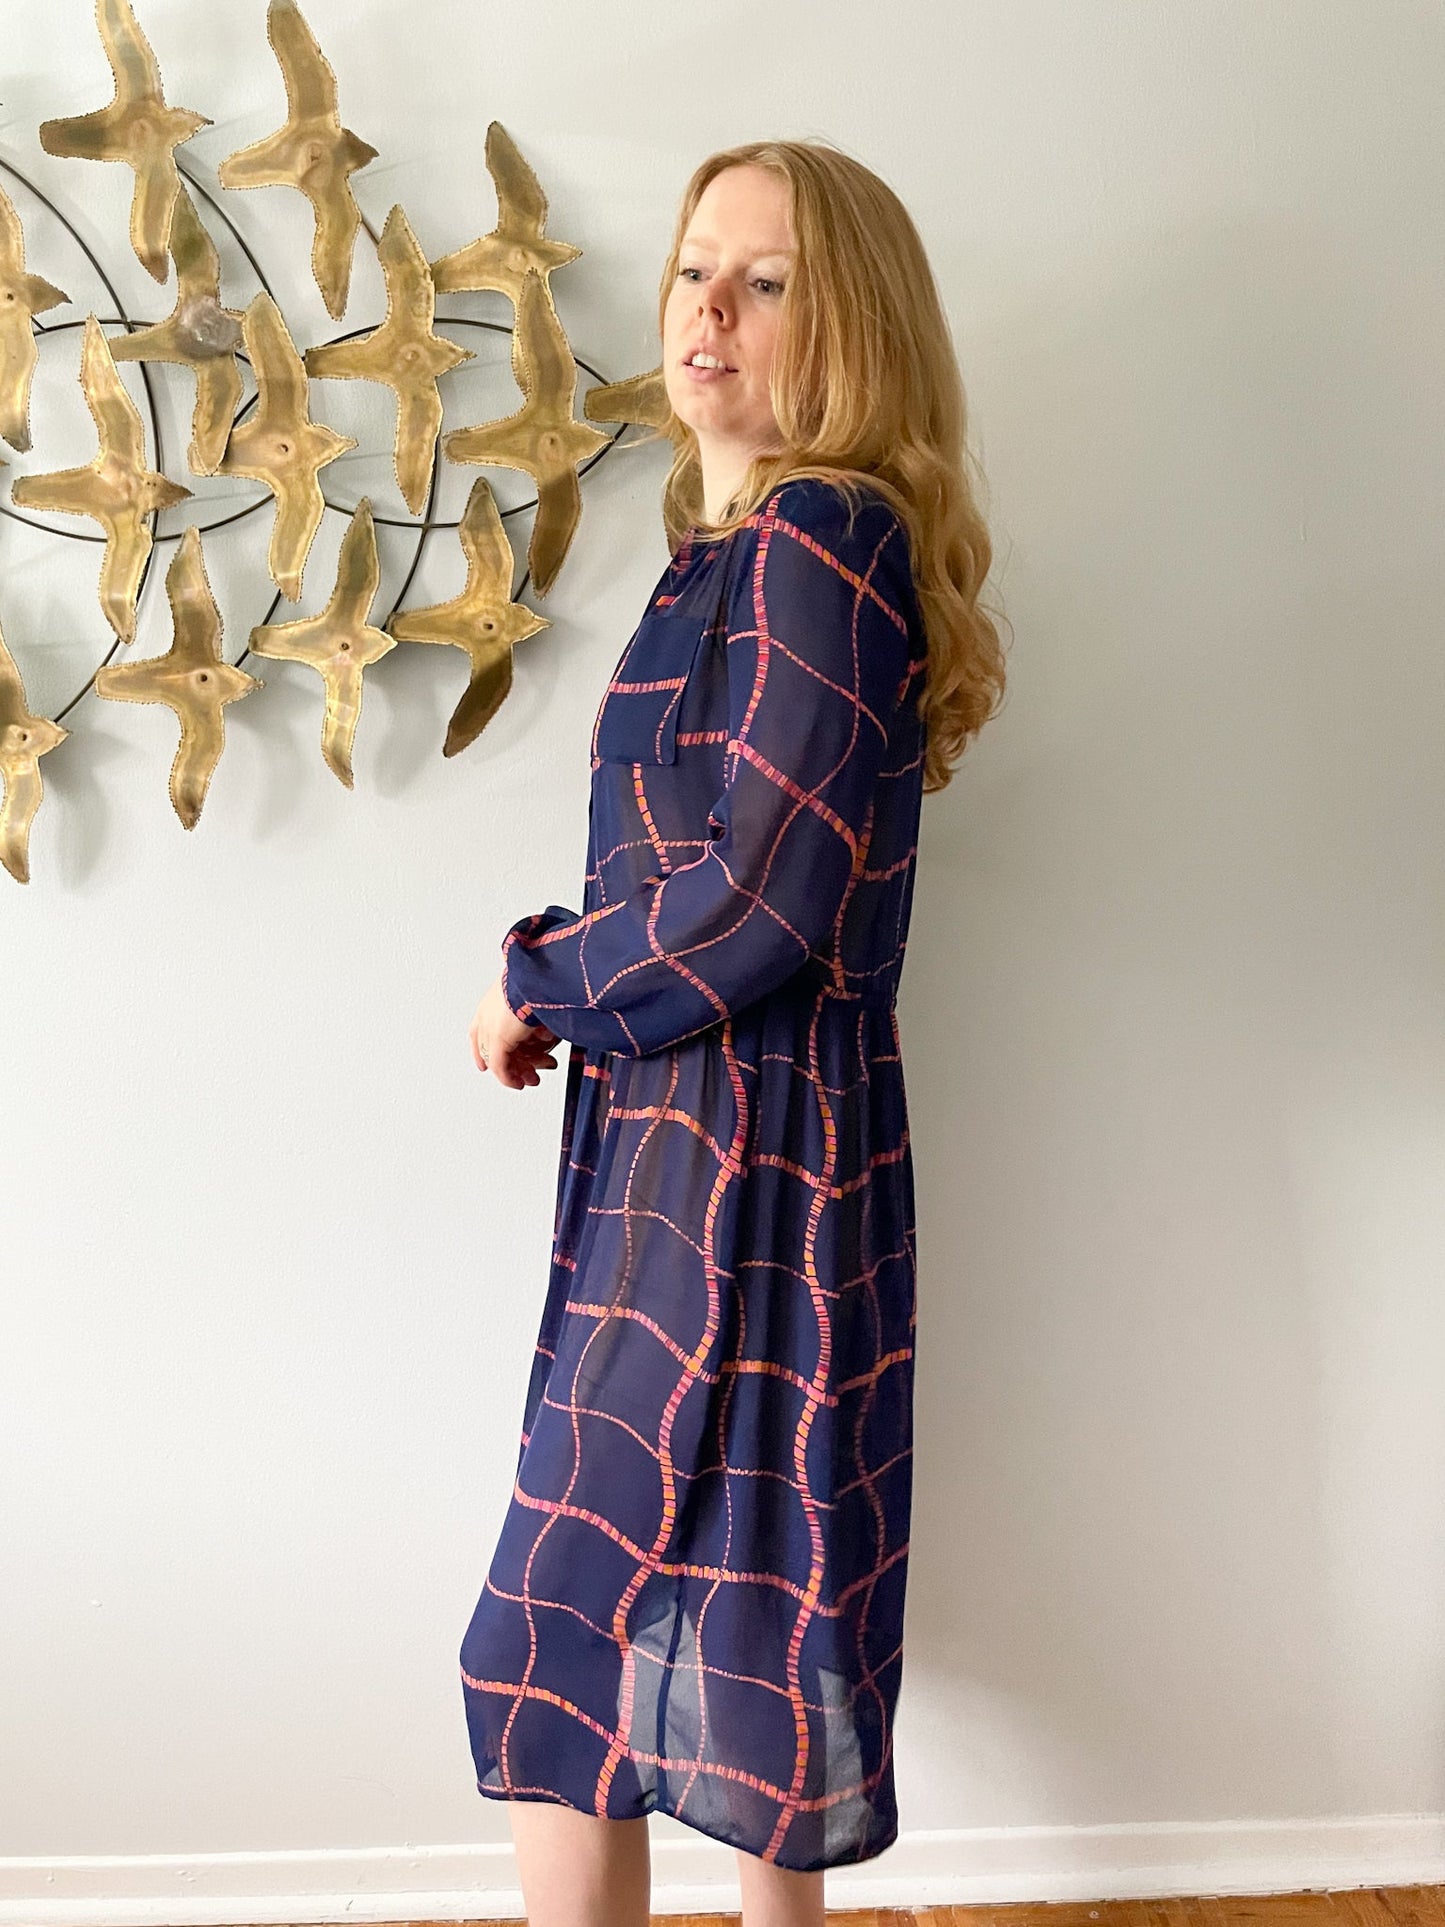 Benee by Lori Ann Navy Pink Orange Square Print Sheer Dress - Medium